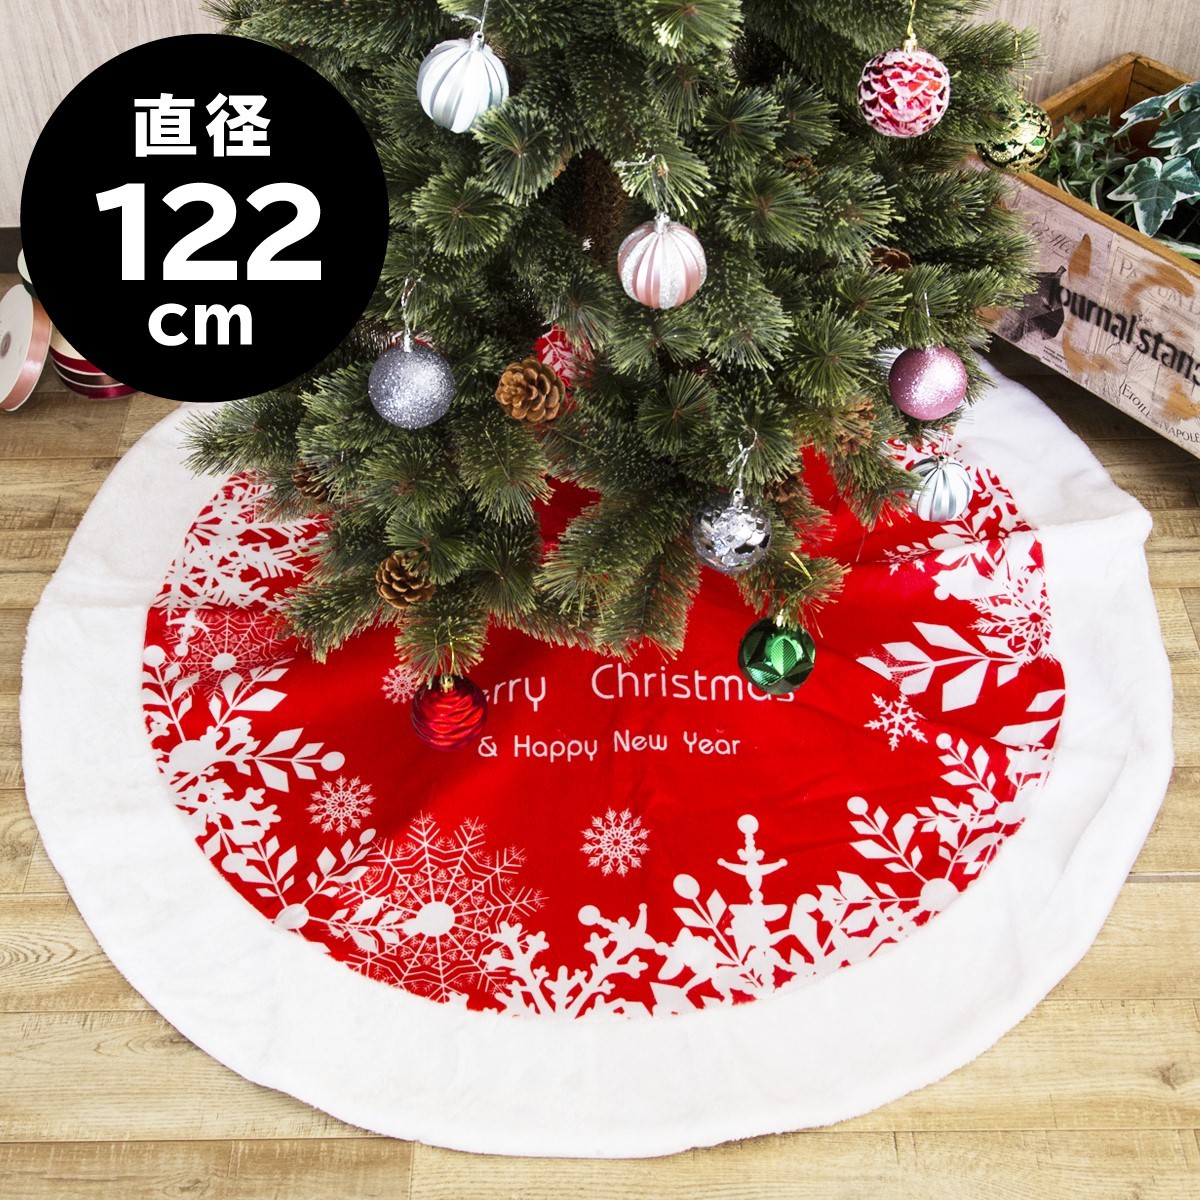 クリスマスツリー 足元 スカート 122cm 赤 レッド 雪模様 ツリー